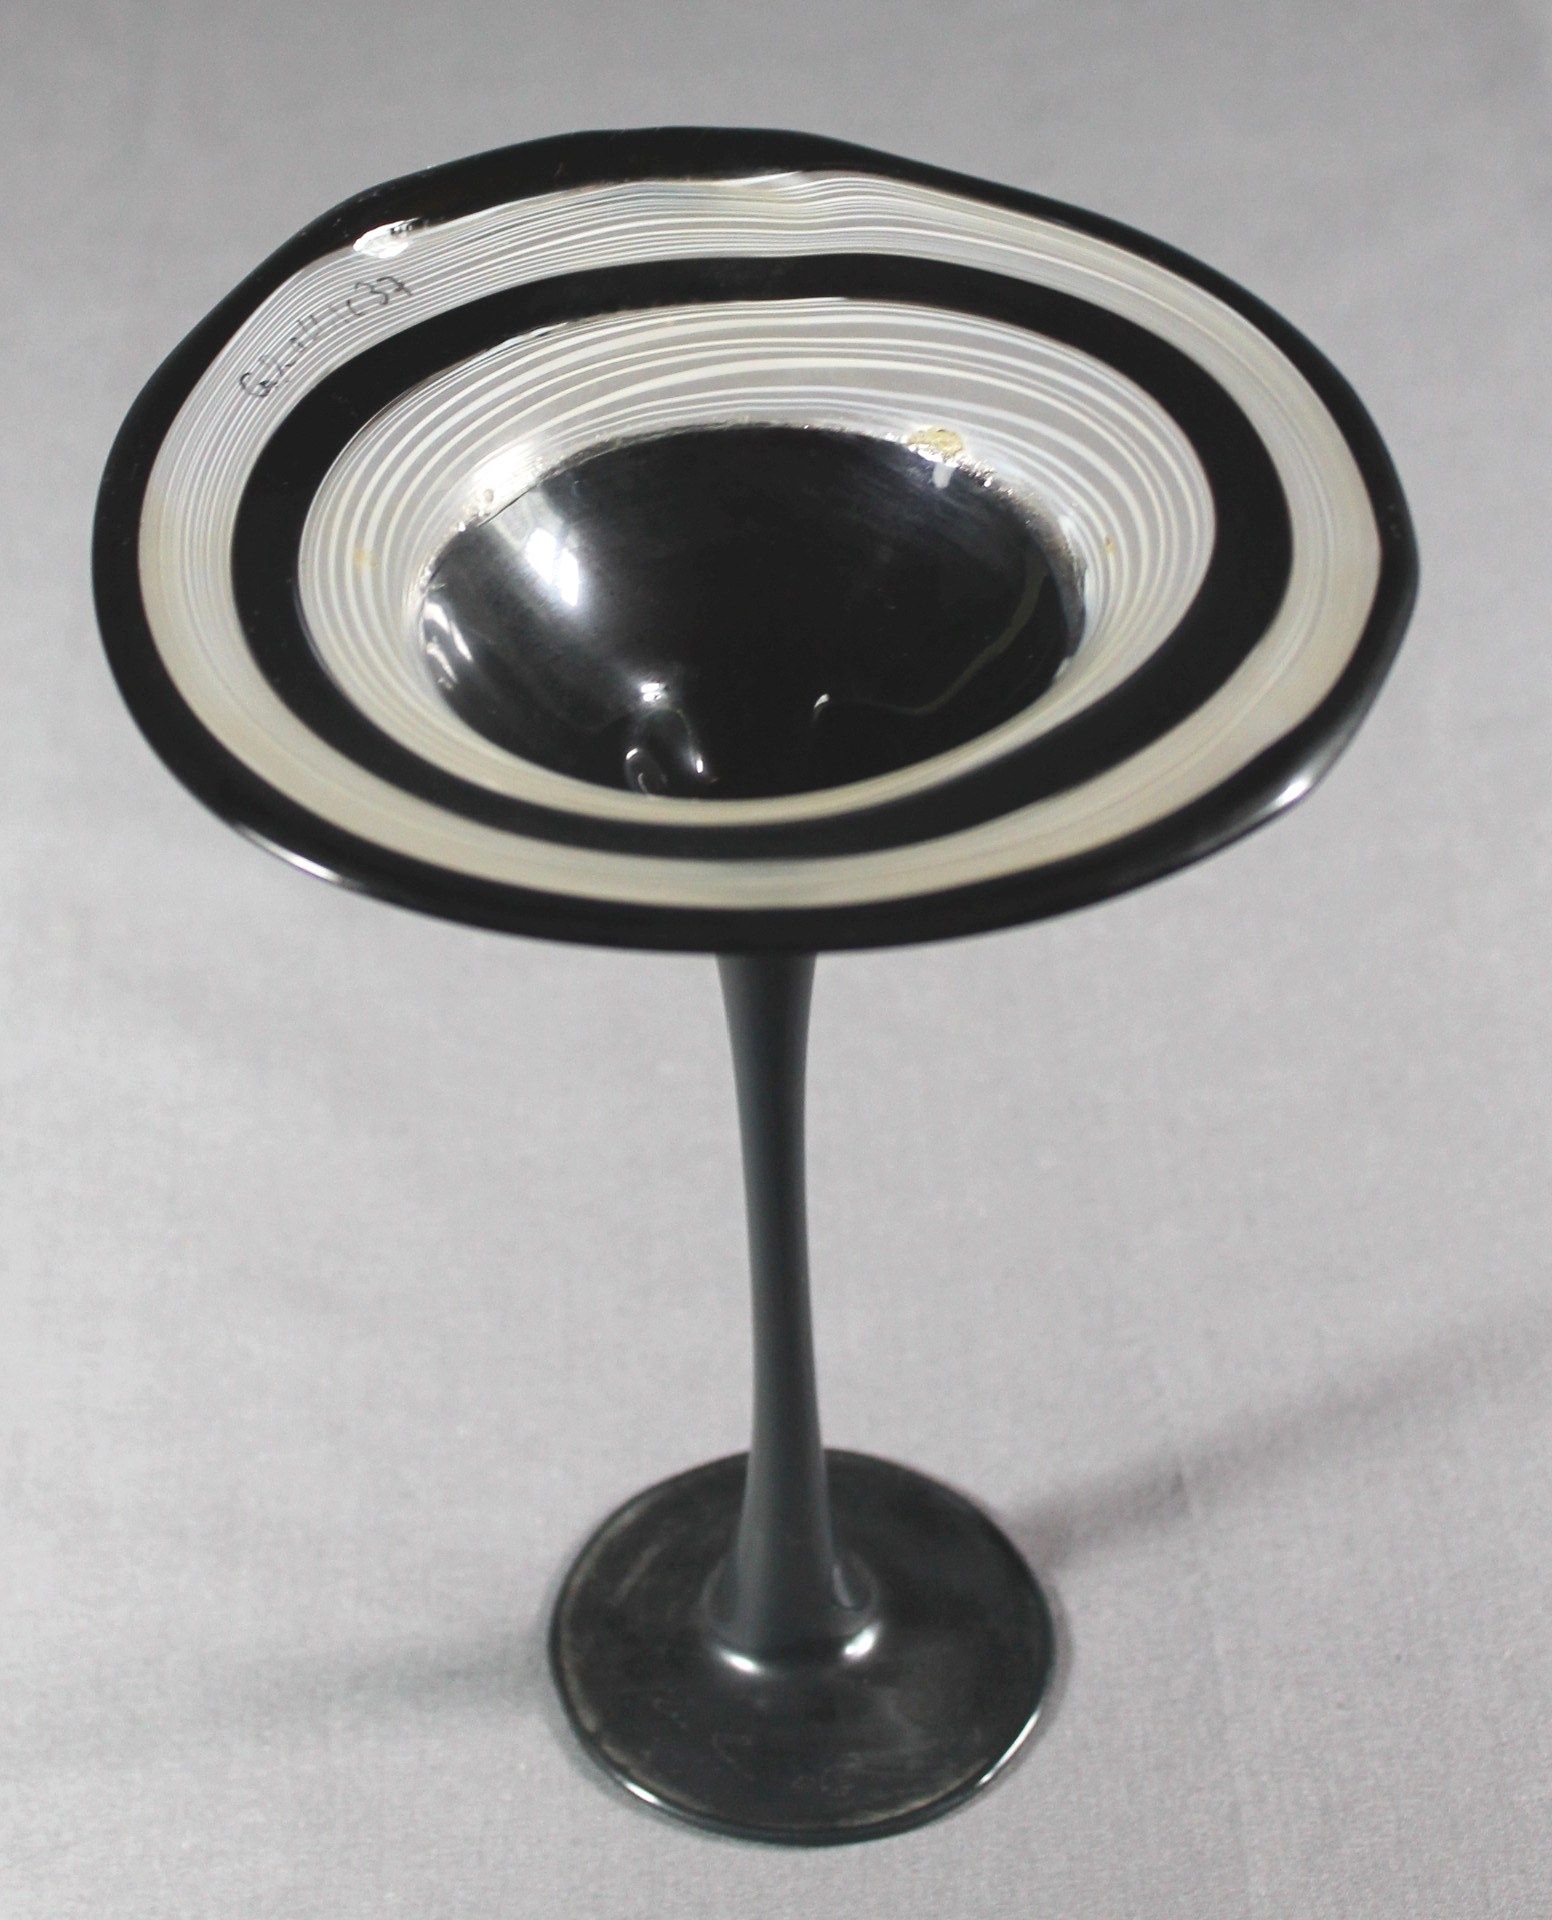 2 Teile Glas; 1 kleine Vase Glas, Klarglas, schauseitig mit kleiner Gravur "Vogelpaar", - Image 2 of 2